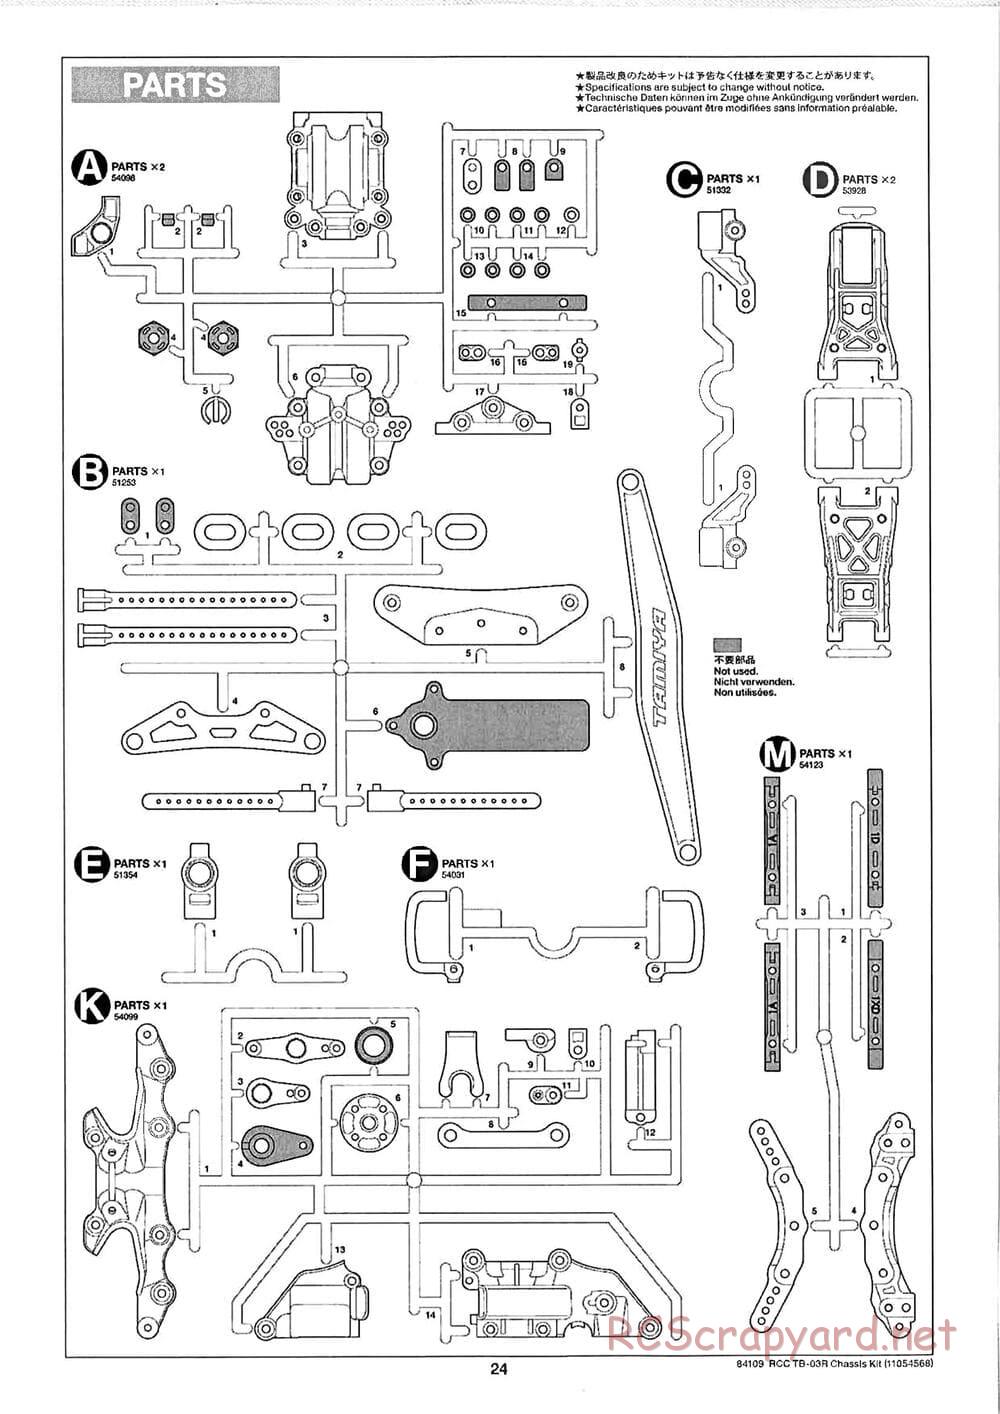 Tamiya - TB-03R Chassis - Manual - Page 24